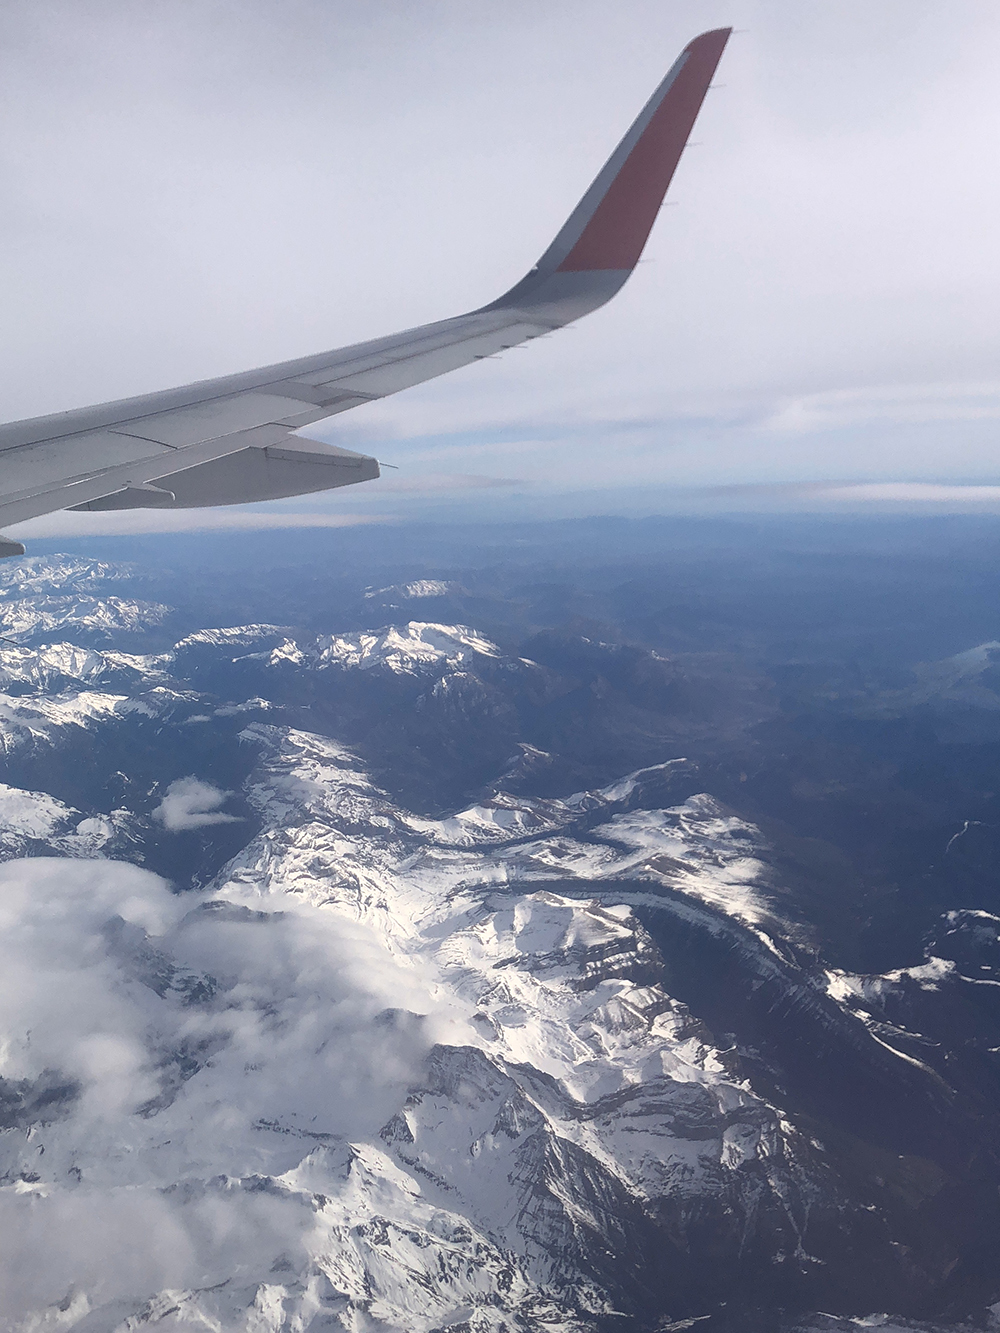 Таким видом на Пиренеи, красивым и величественным, провожала меня Испания в московскую зиму. Интересно, что самолет летел над Наваррой и теми местами, где я была на экскурсии, — кажется, я даже видела местные каньоны